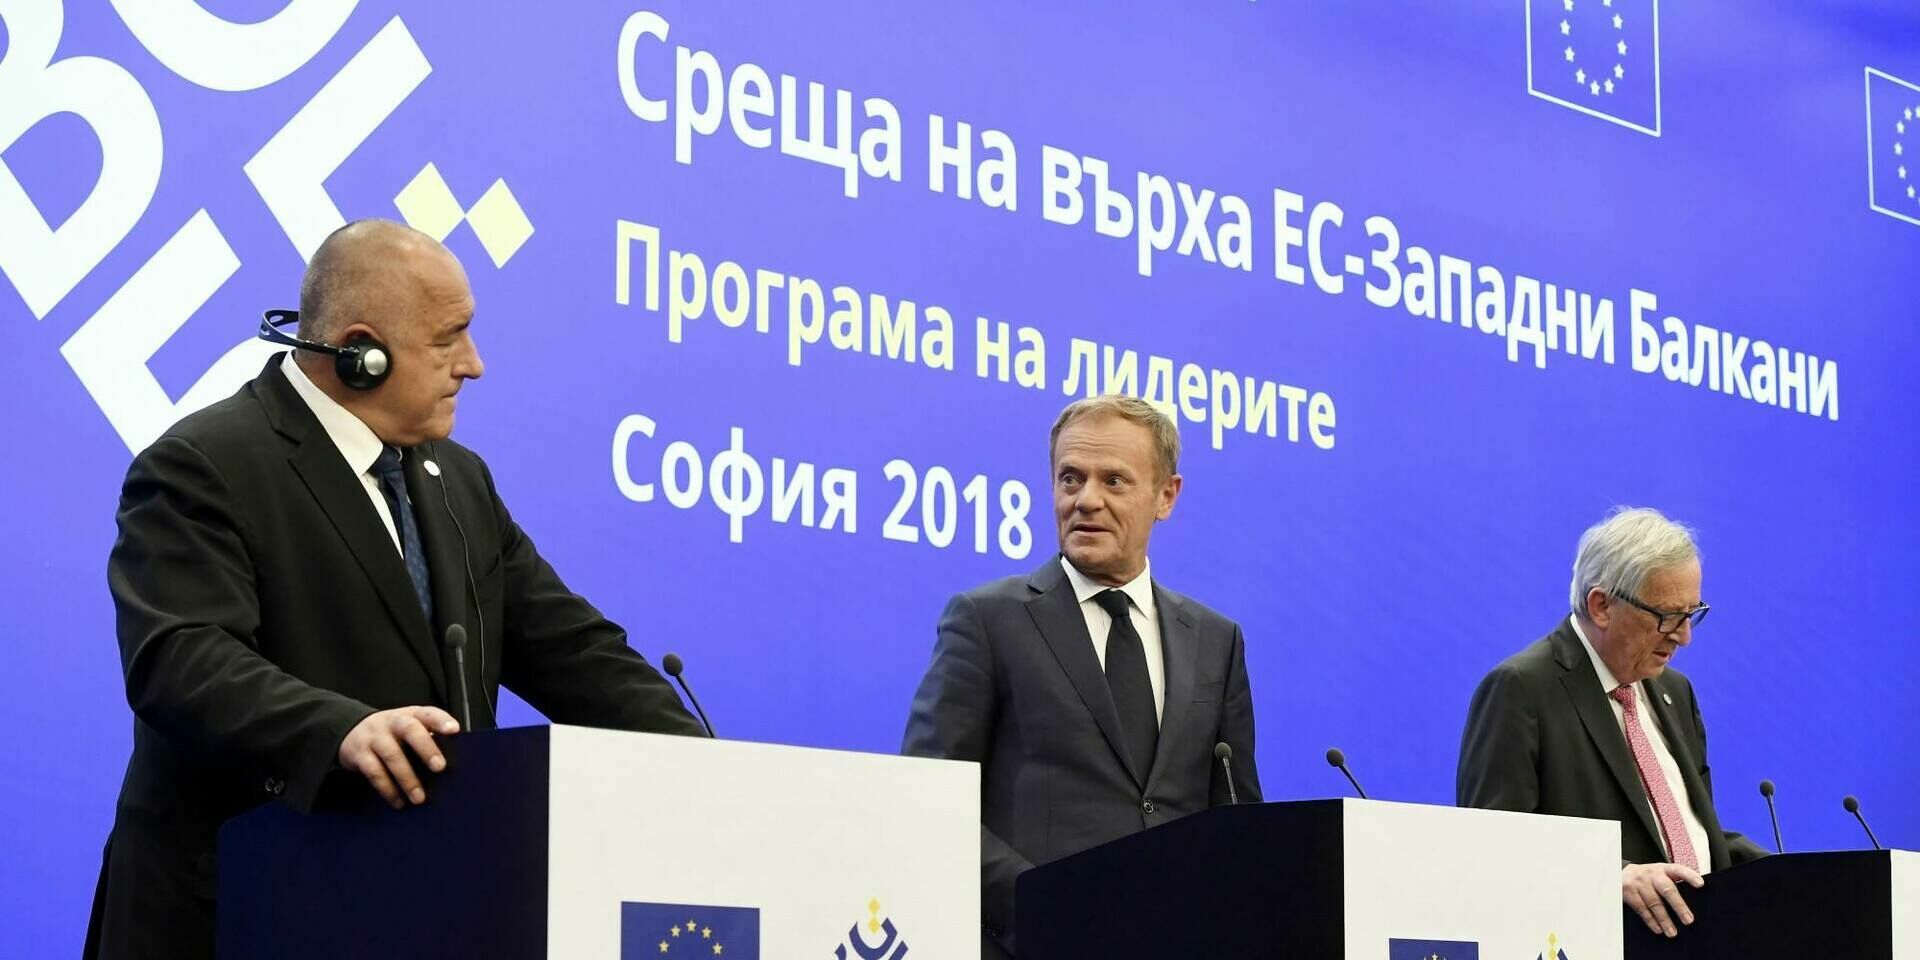 Еще скандал:российские спецслужбы прослушивали лидеров Евросоюза в Болгарии